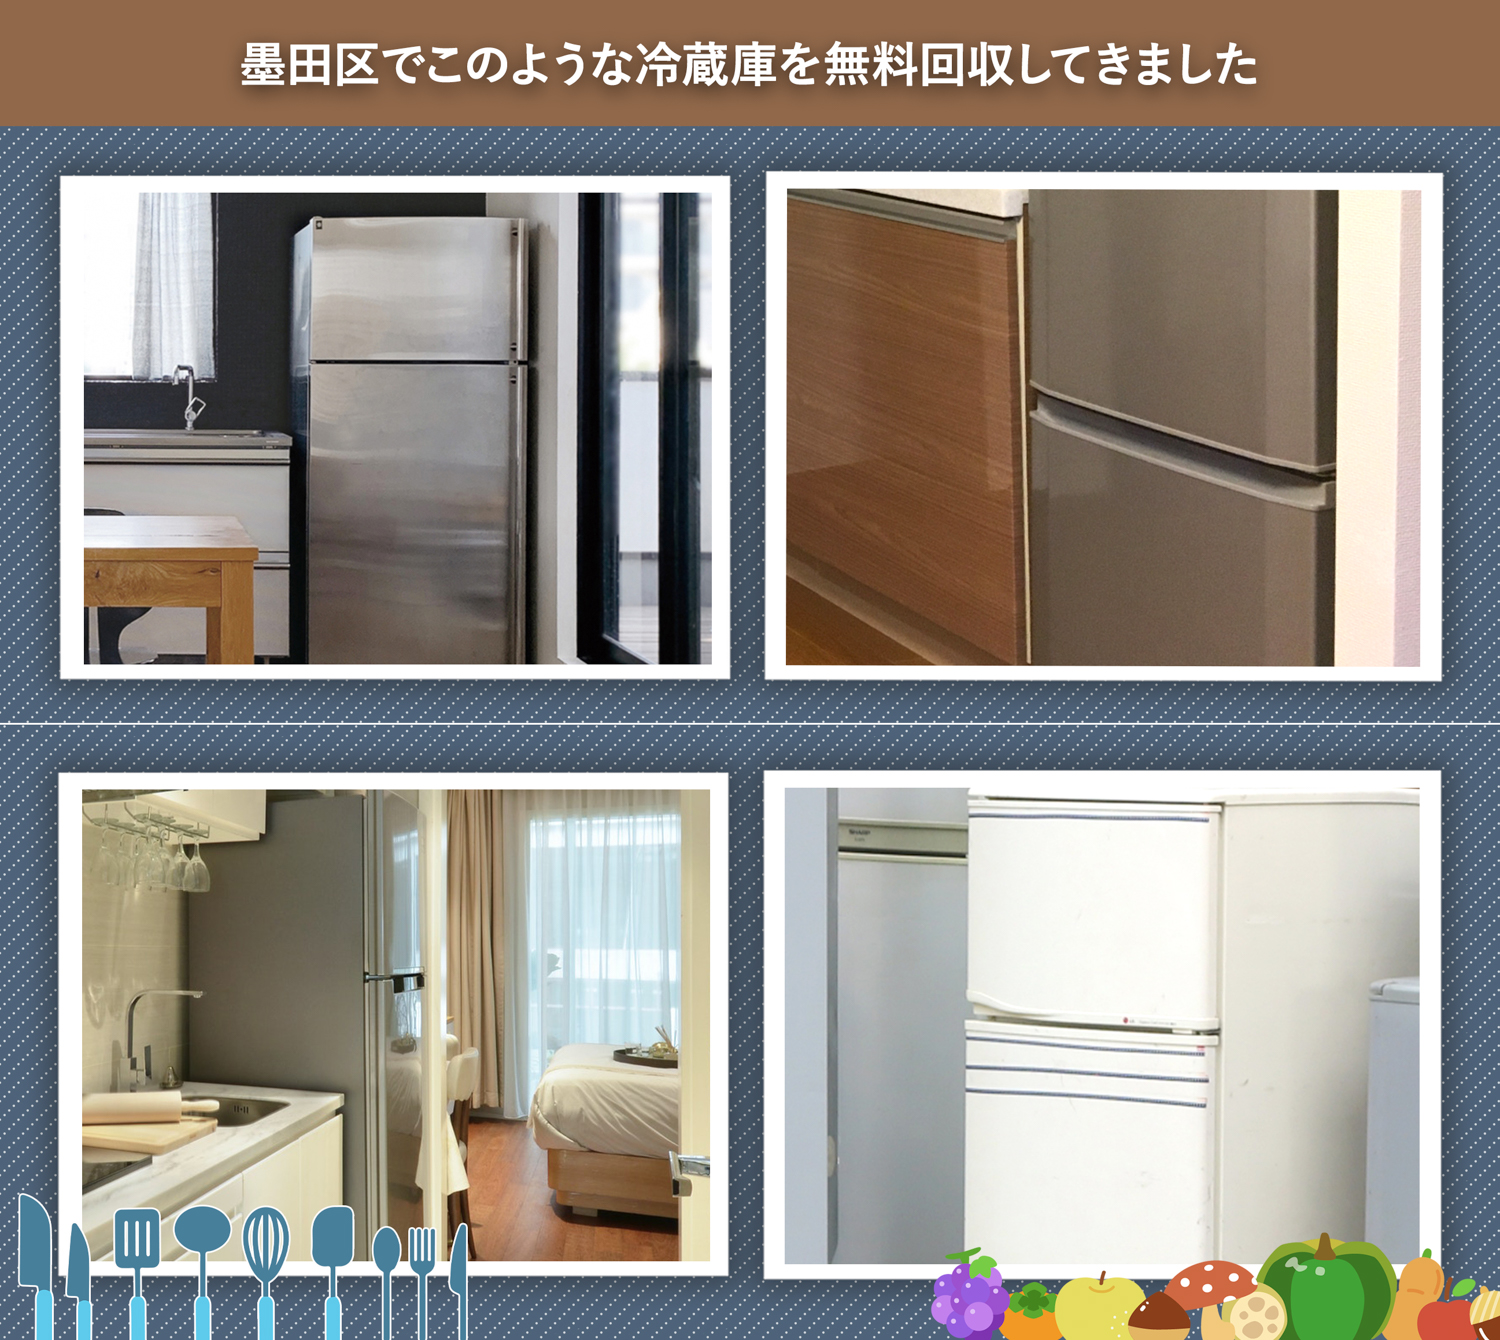 墨田区でこのような冷蔵庫を無料回収してきました。